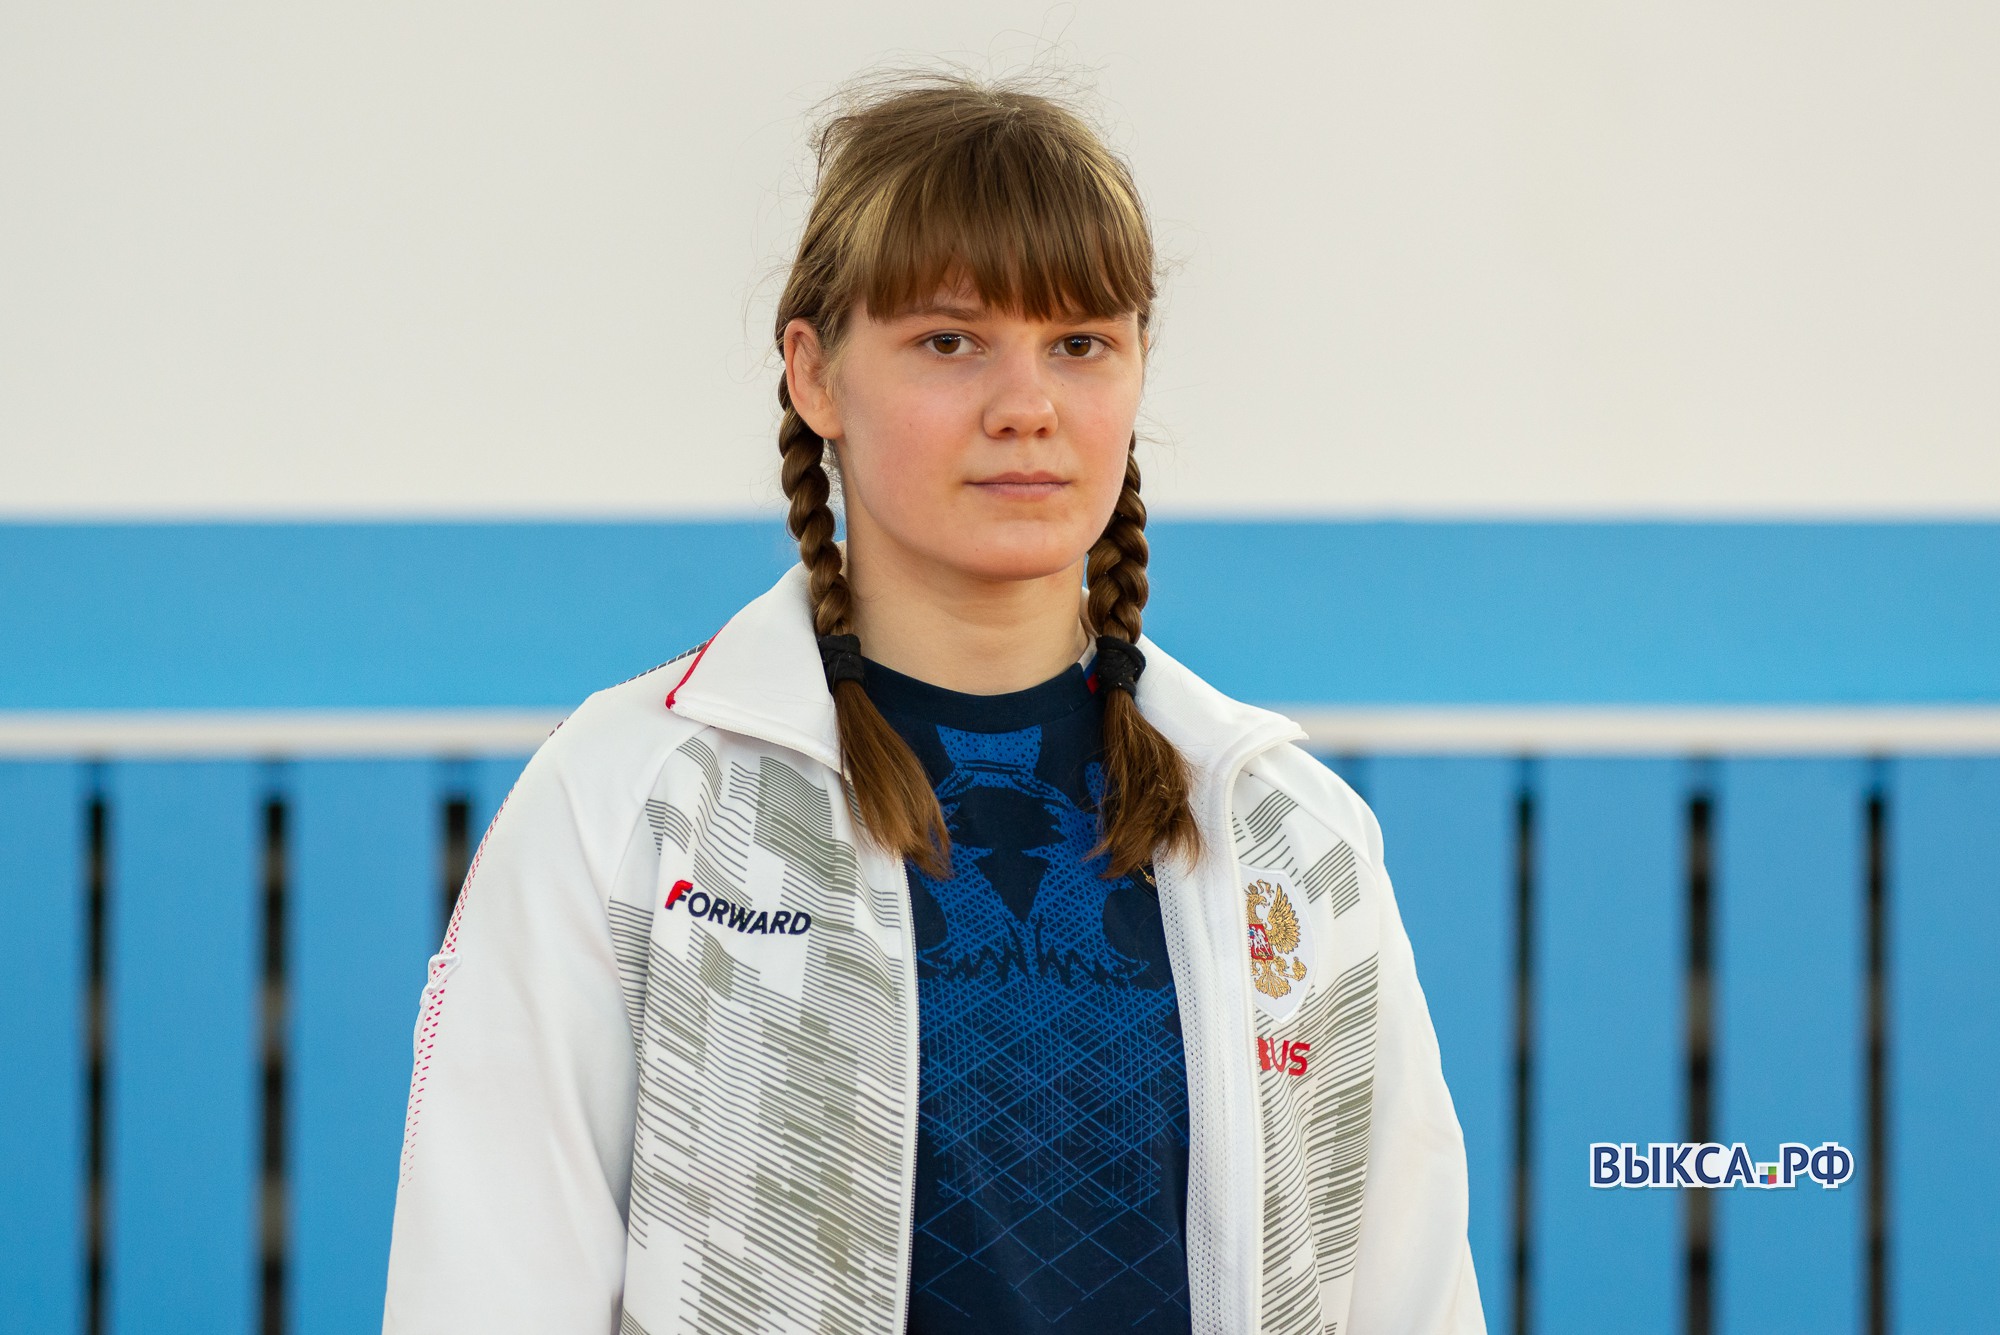 Софье Цибровой присвоили звание мастера спорта